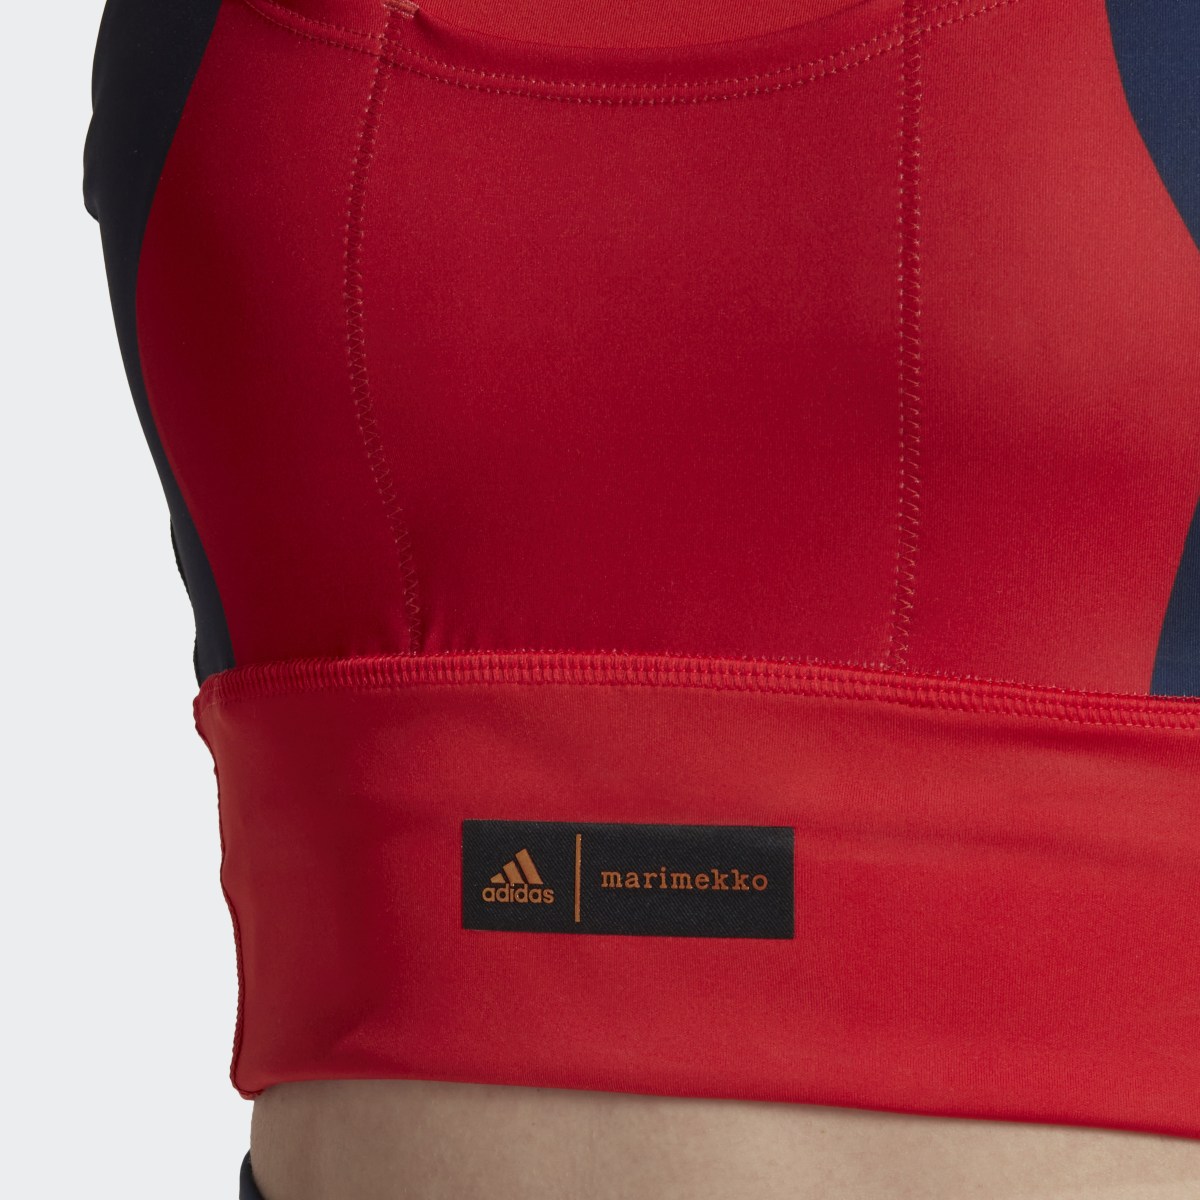 Adidas Marimekko Medium-Support Pocket Bra. 7